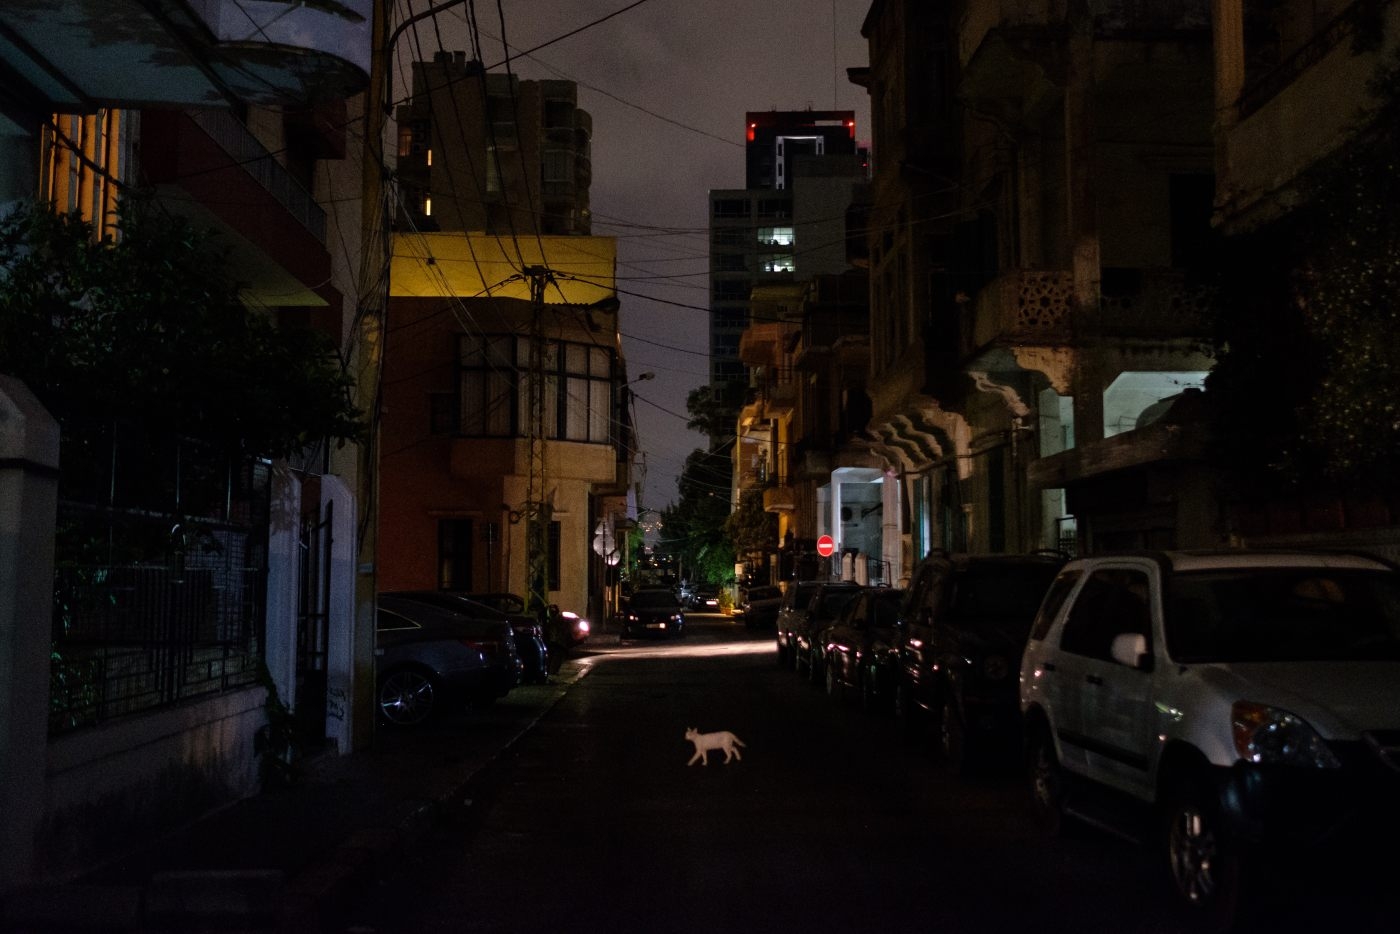 بحران برق لبنان، بیروت، چشم خاورمیانه را در تاریکی فرو برده است.